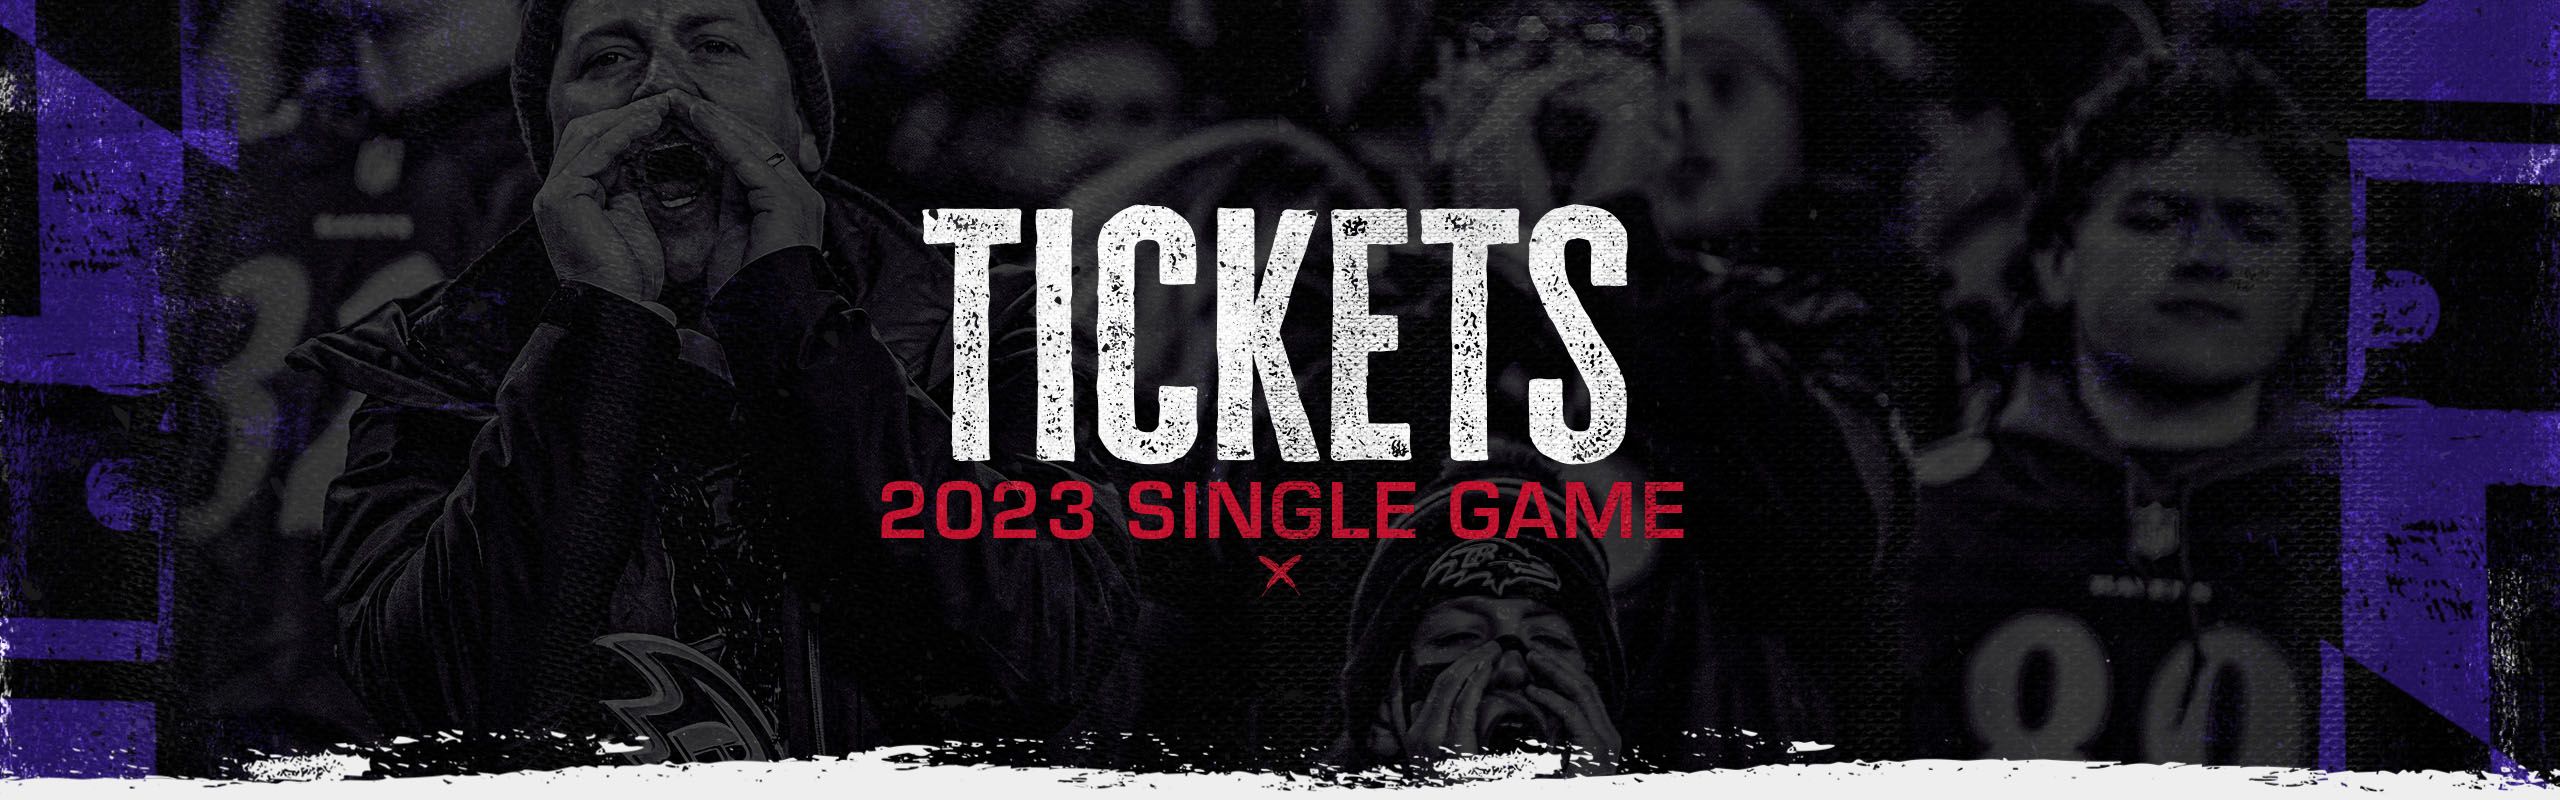 raven tickets 2022